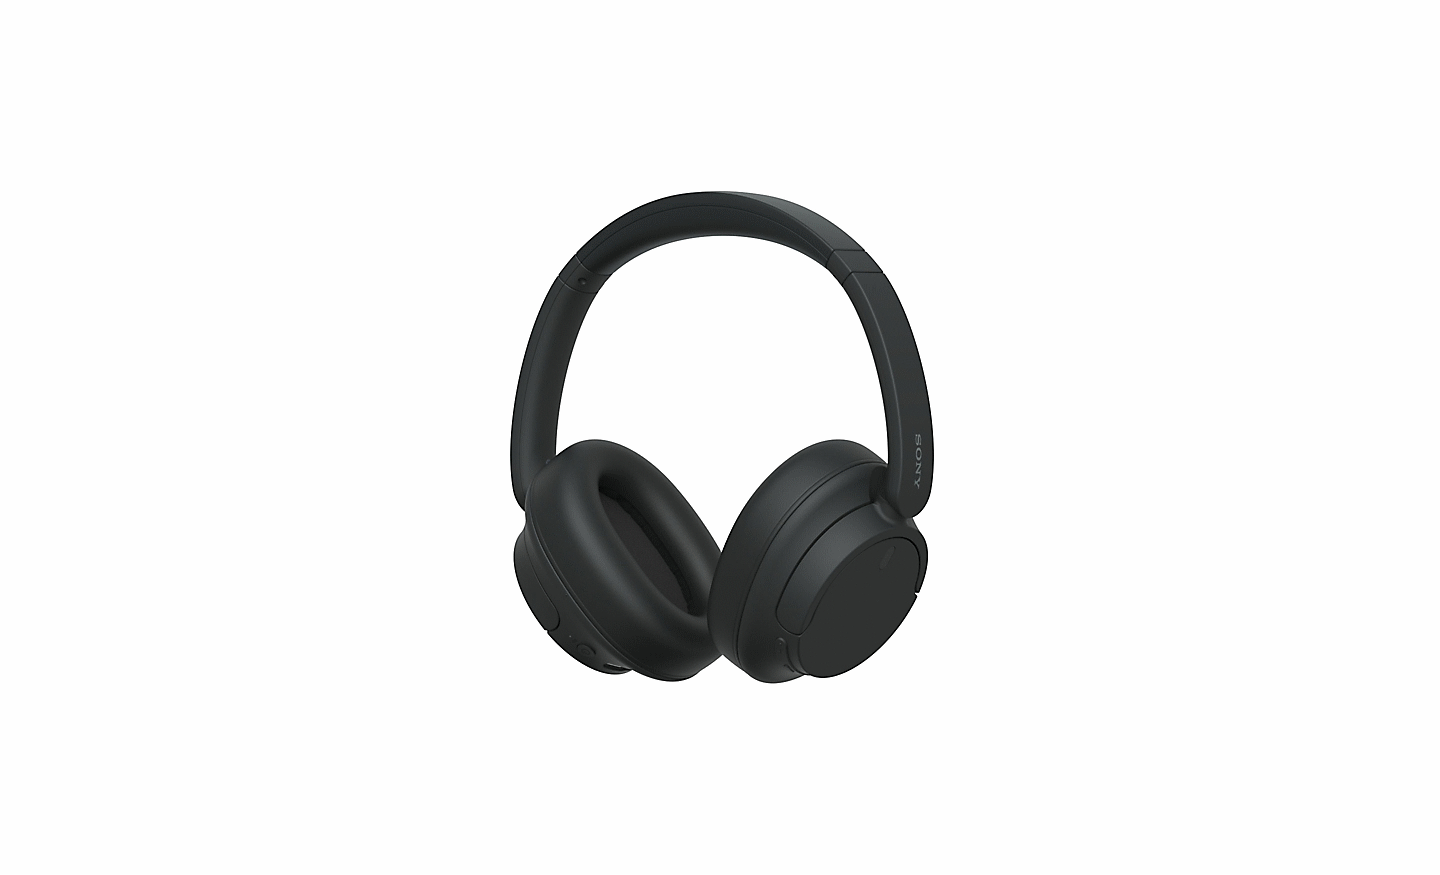 Immagine di un paio di cuffie WH-CH720 nere di Sony su sfondo bianco